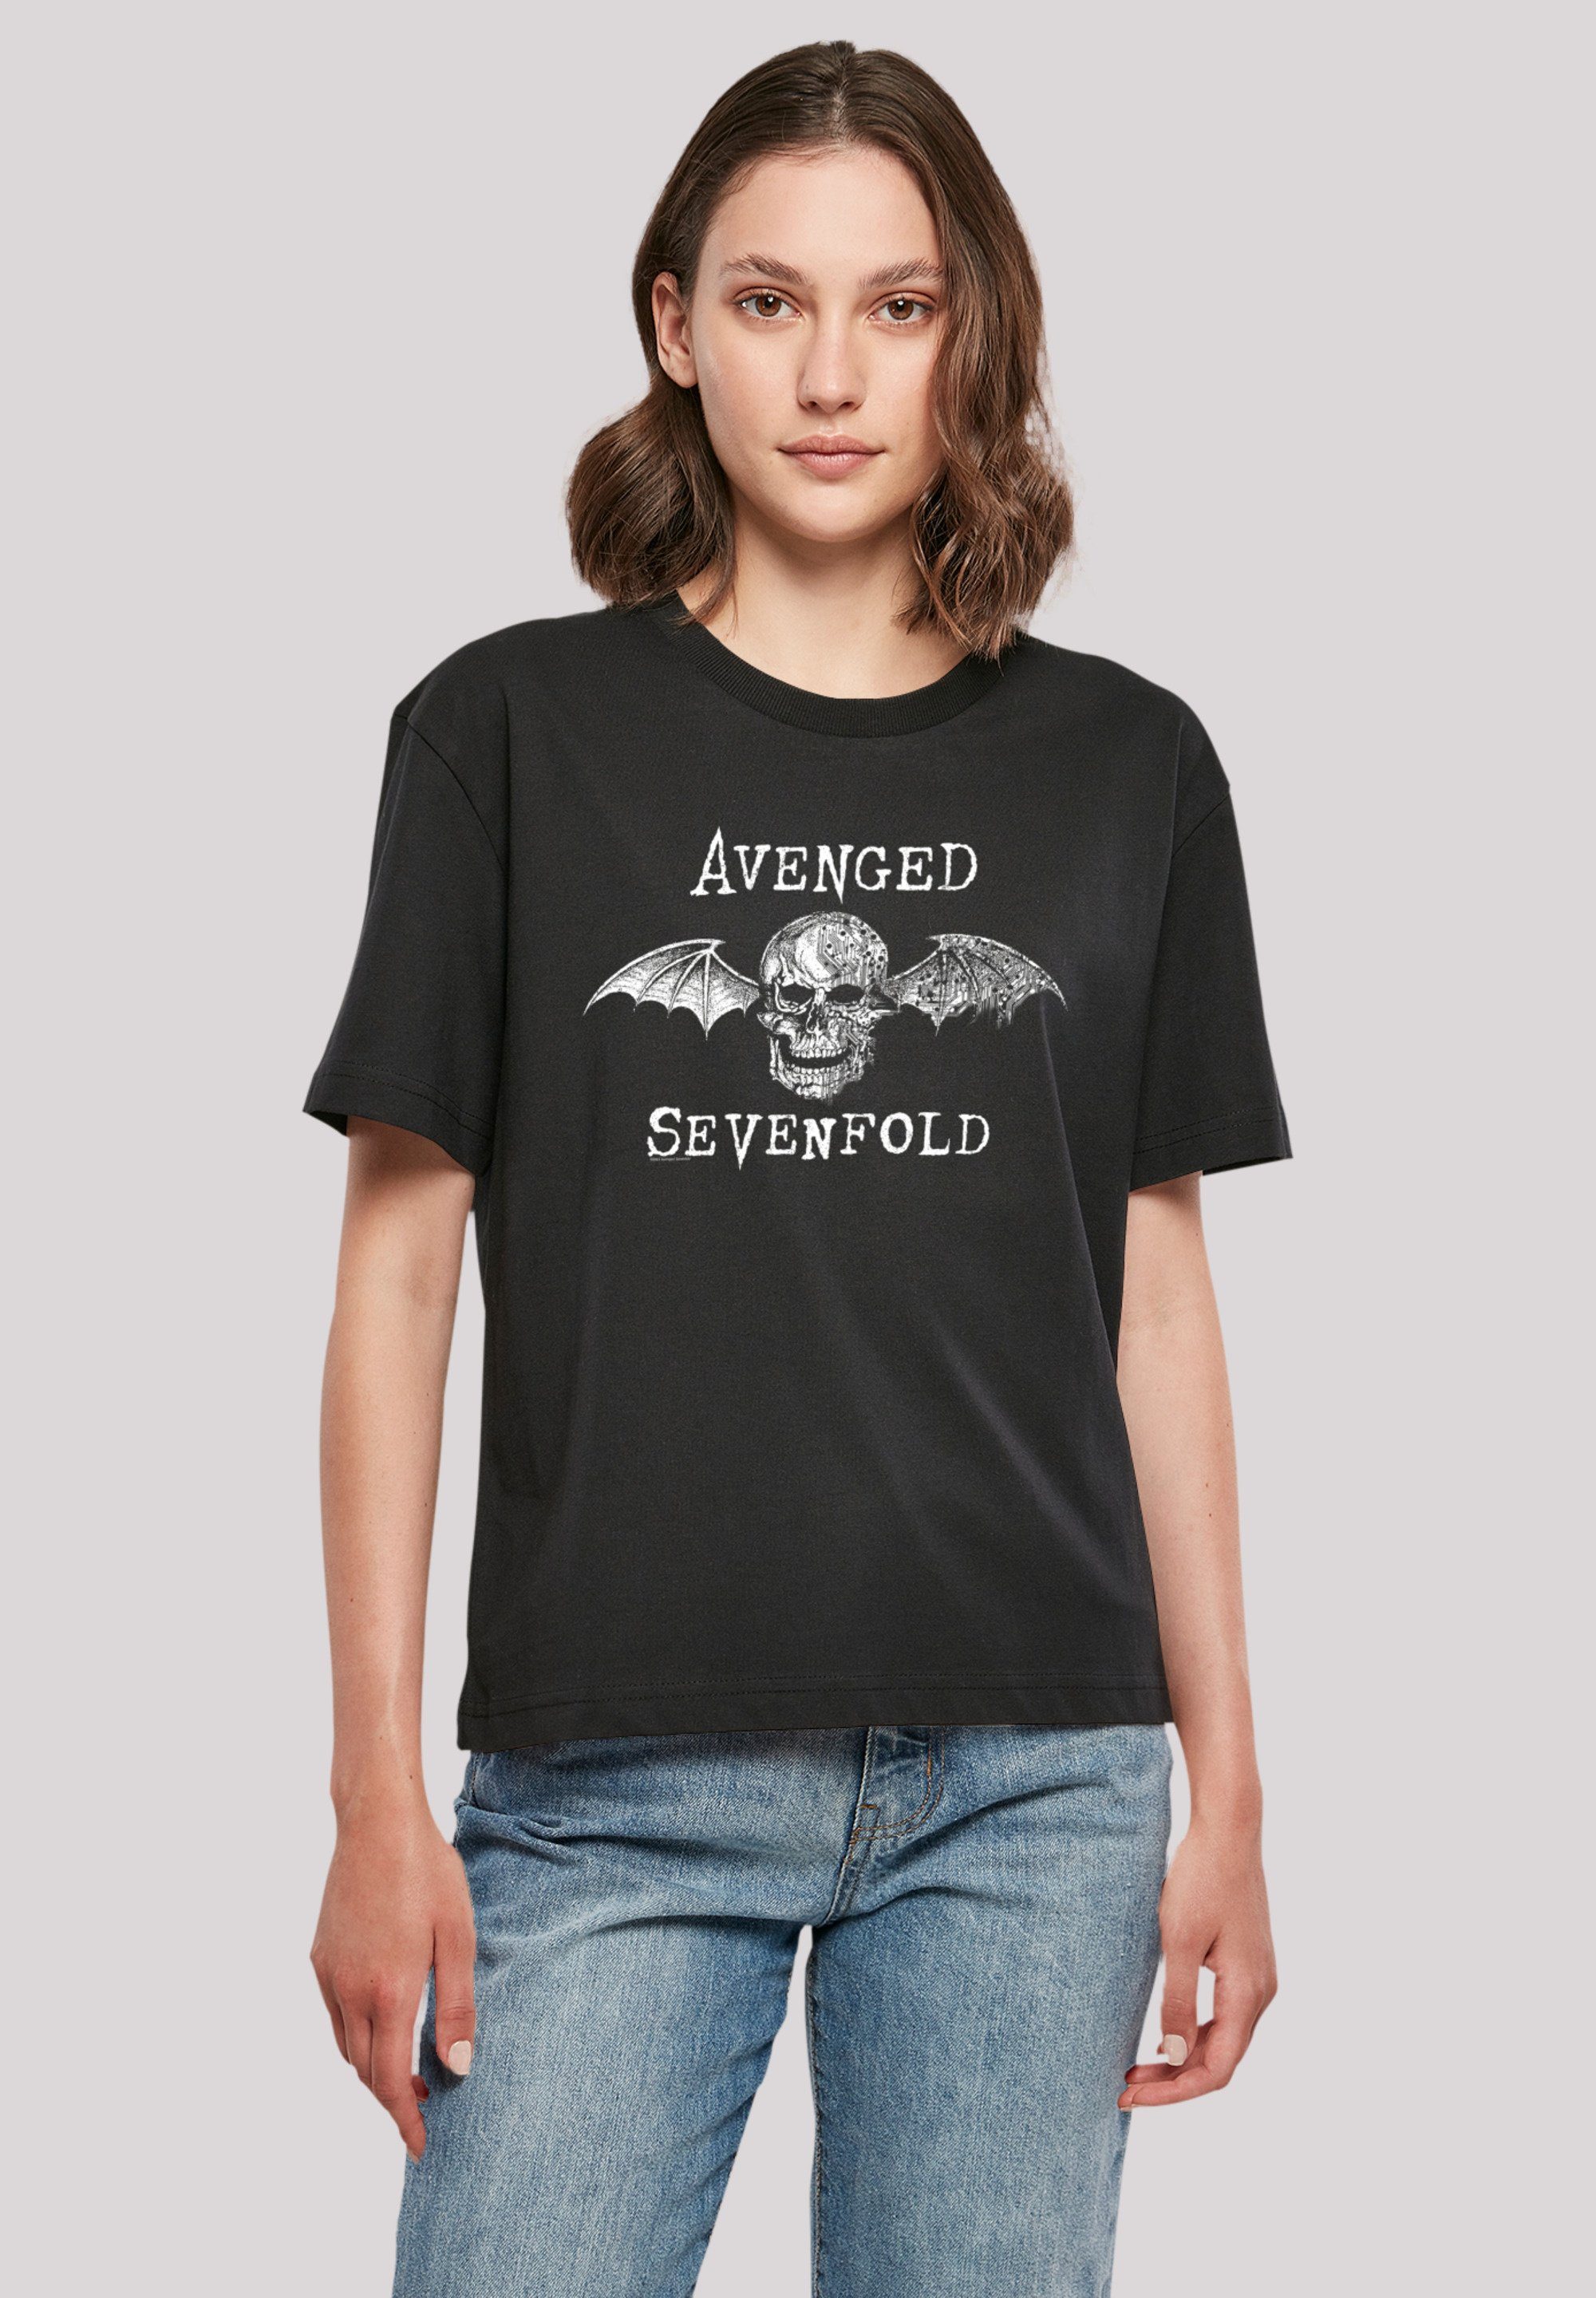 F4NT4STIC T-Shirt Avenged Sevenfold Rock lizenziertes Avenged Qualität, Rock-Musik, Cyborg Offiziell Sevenfold Premium Bat Band, T-Shirt Band Metal